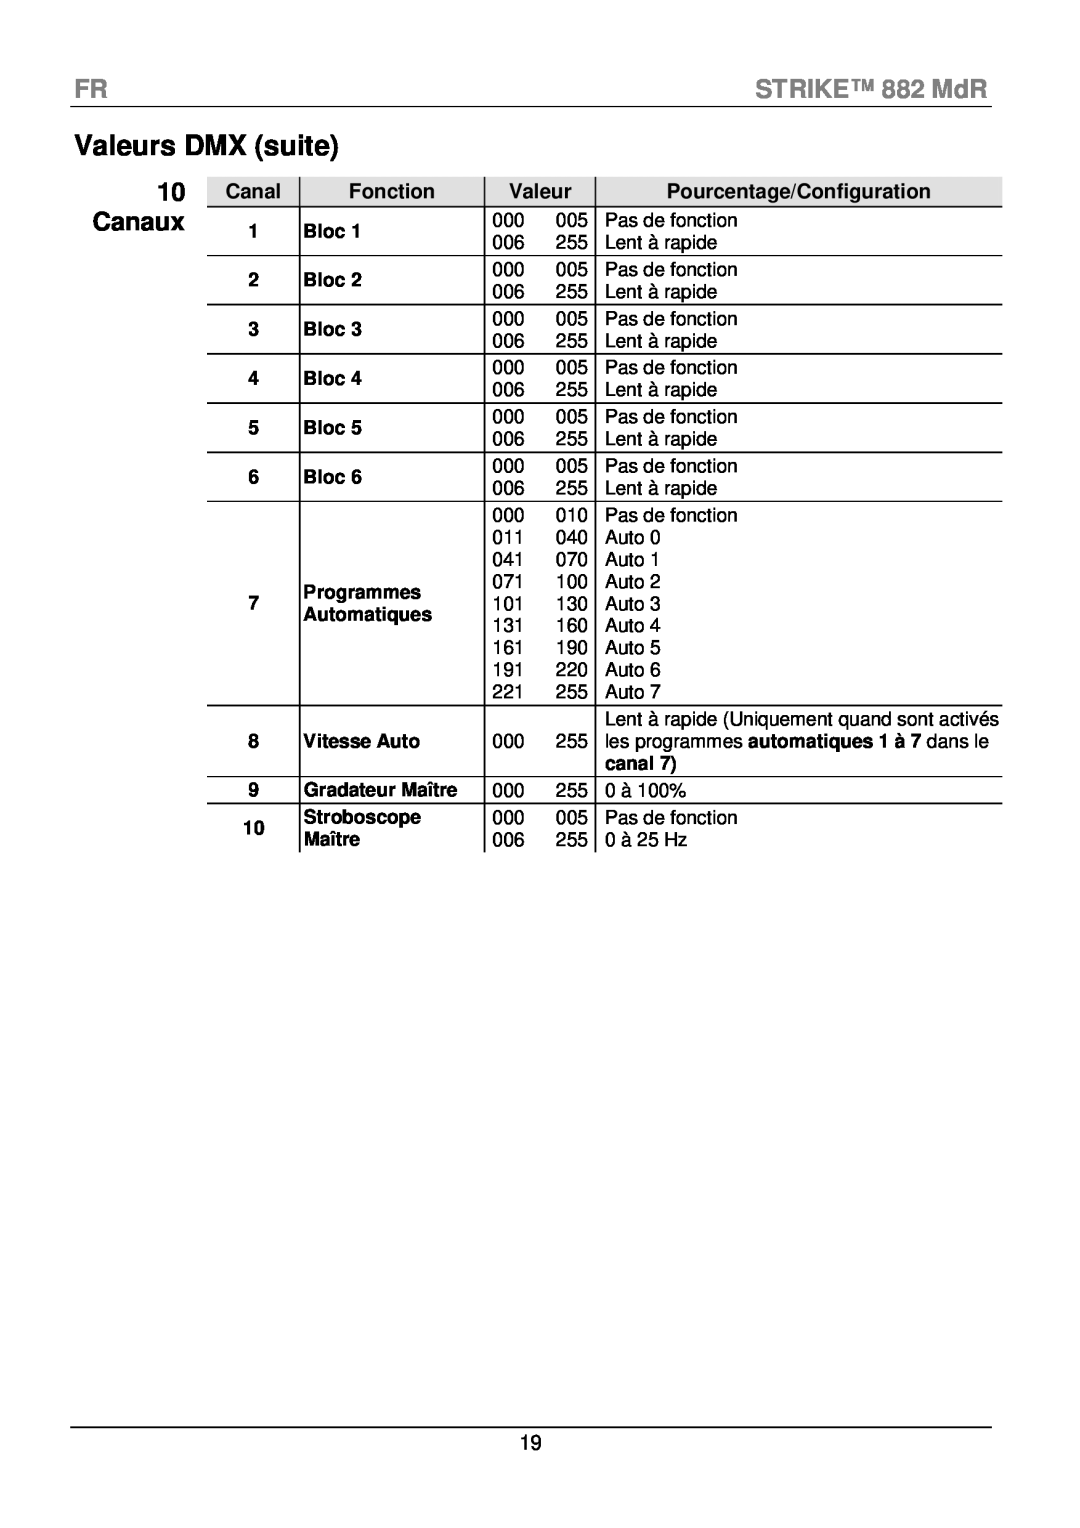 Chauvet CLP-15 manual Canaux, Valeurs DMX suite, FRSTRIKE 882 MdR, Canal, Fonction, Pourcentage/Configuration 